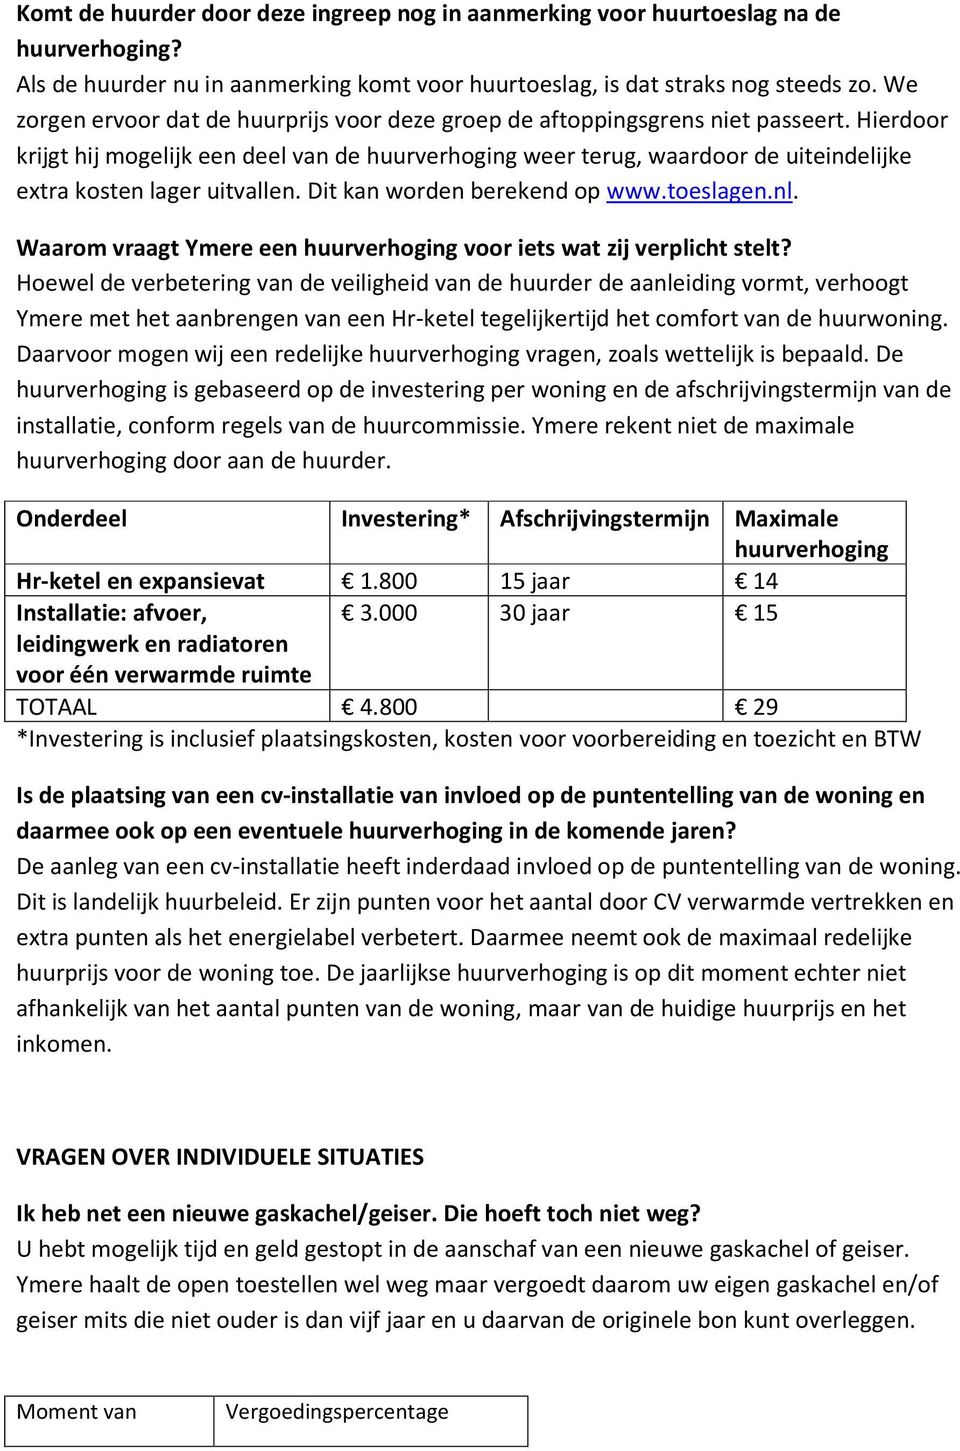 Hierdoor krijgt hij mogelijk een deel van de huurverhoging weer terug, waardoor de uiteindelijke extra kosten lager uitvallen. Dit kan worden berekend op www.toeslagen.nl.